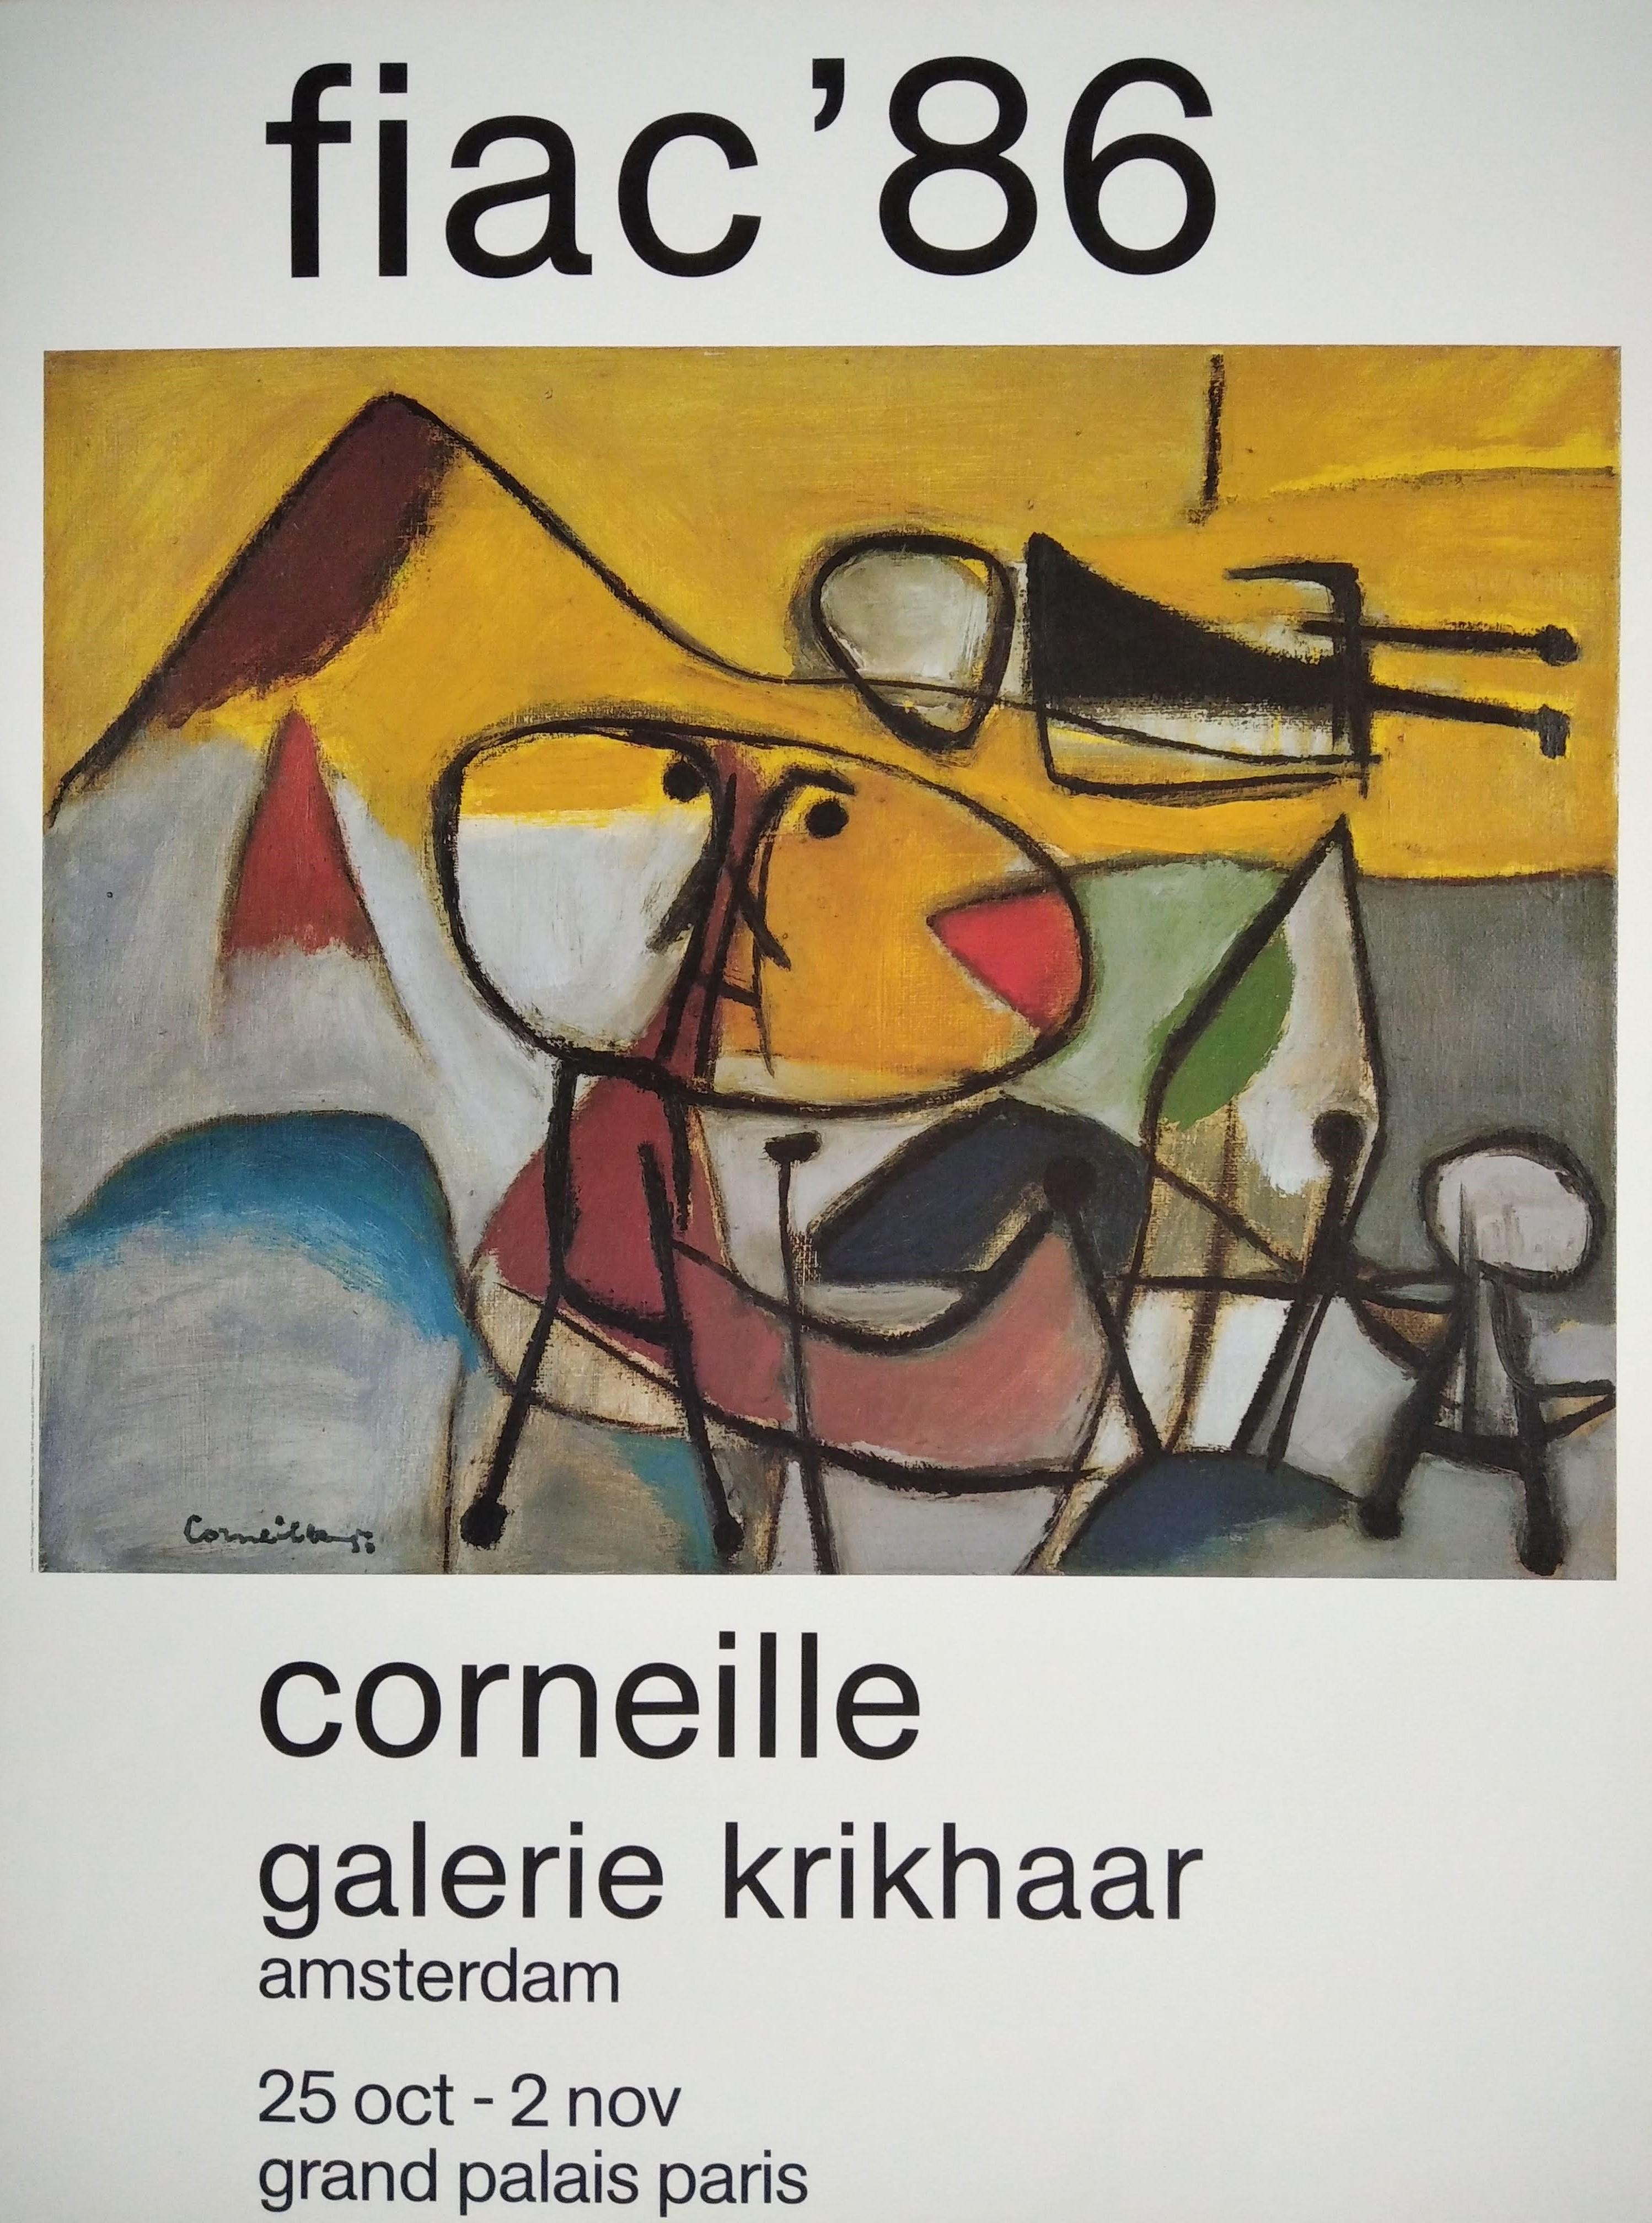 Fiac '86 - Print by Corneille